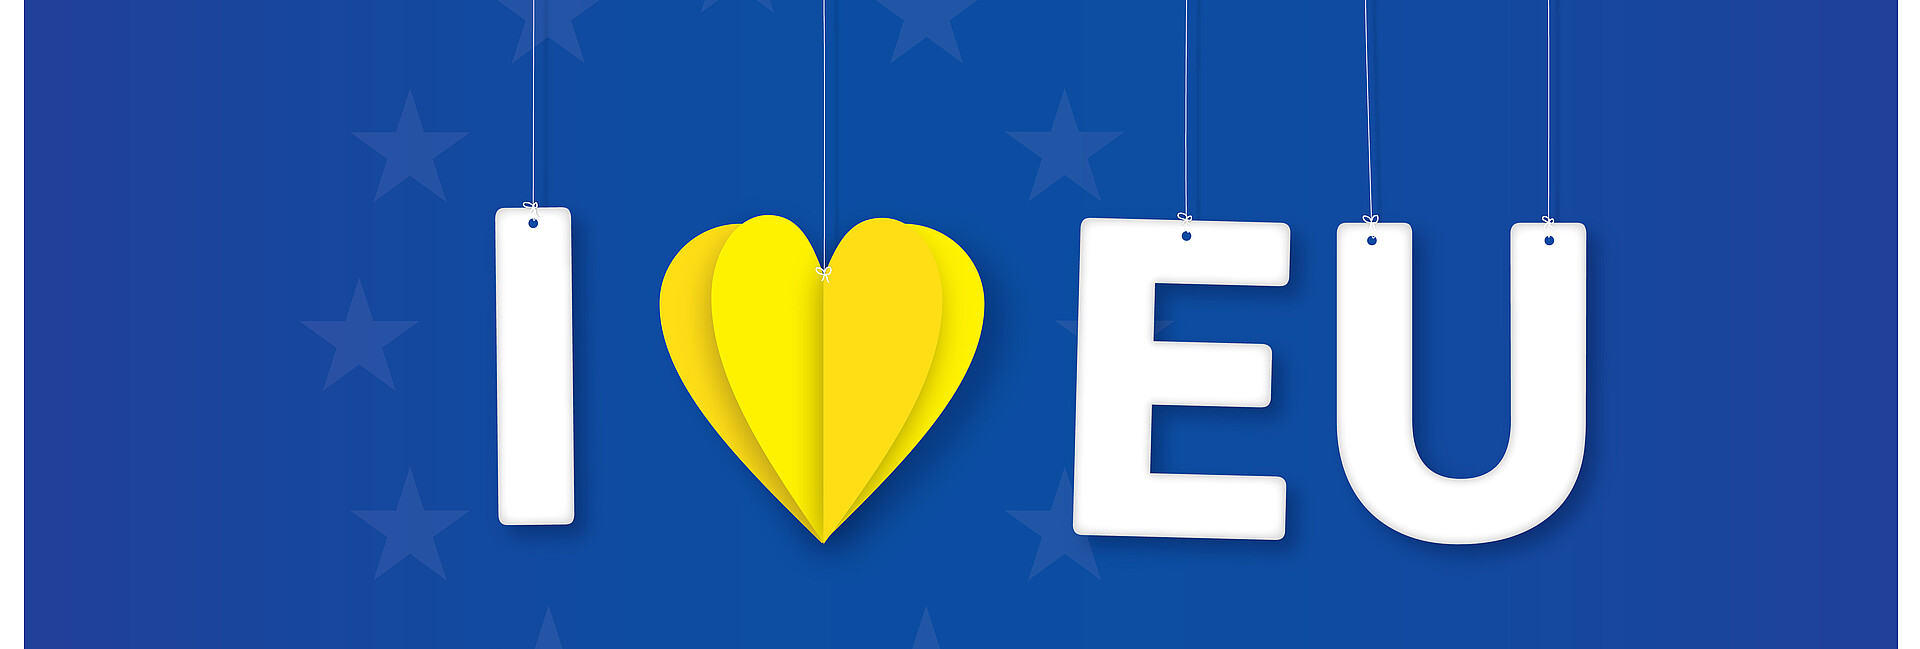 Auf blauem Hintergrund seht in weißen Buchstaben „I love EU“ wobei das love ein gelbes, aus Papier gefaltetes Herz ist. 